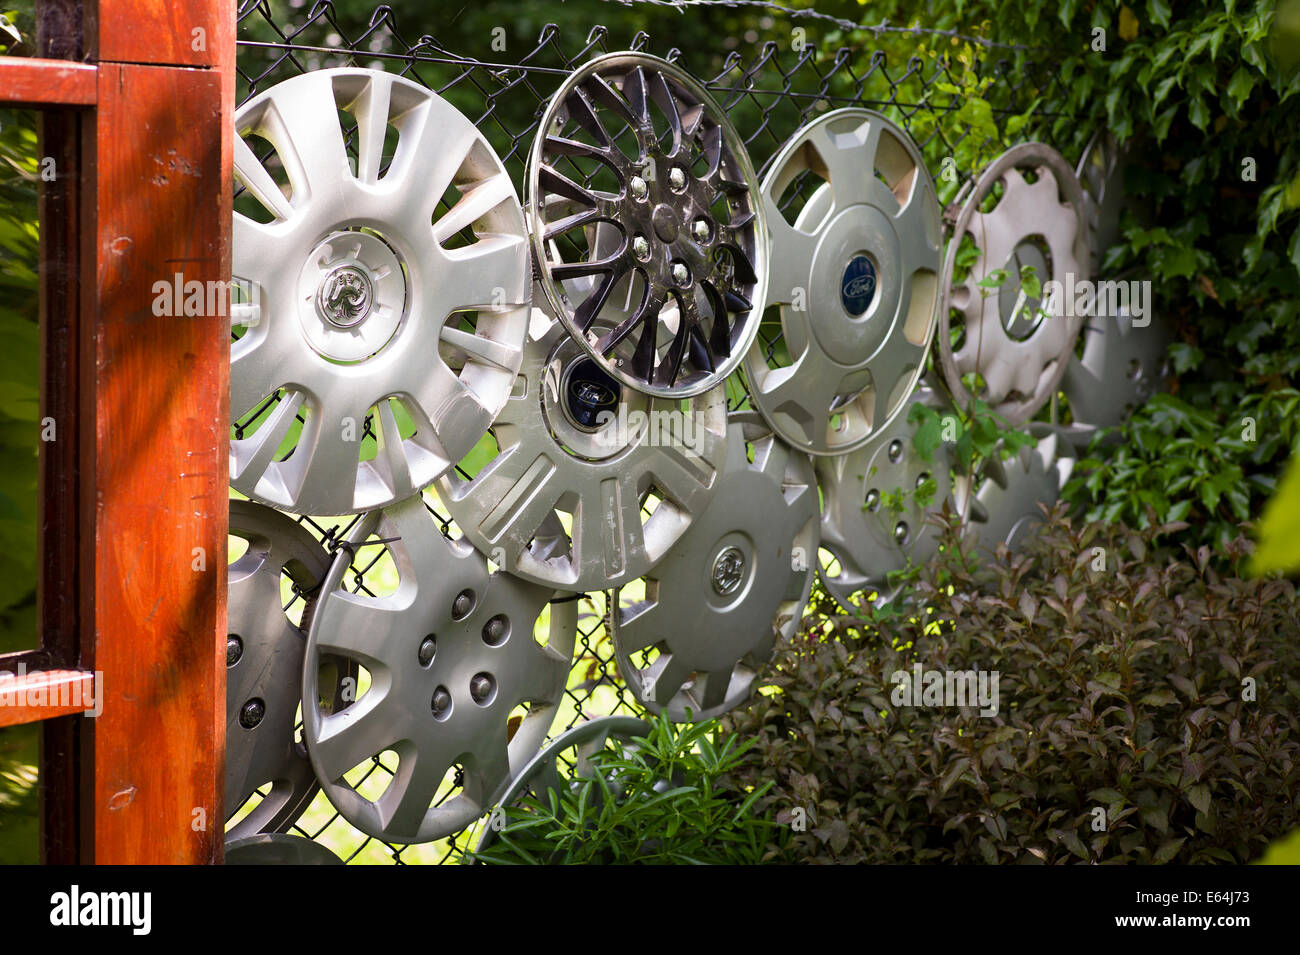 Les moyeux de roue de voiture trouvé utilisé pour décorer une clôture métallique dans un petit jardin Banque D'Images